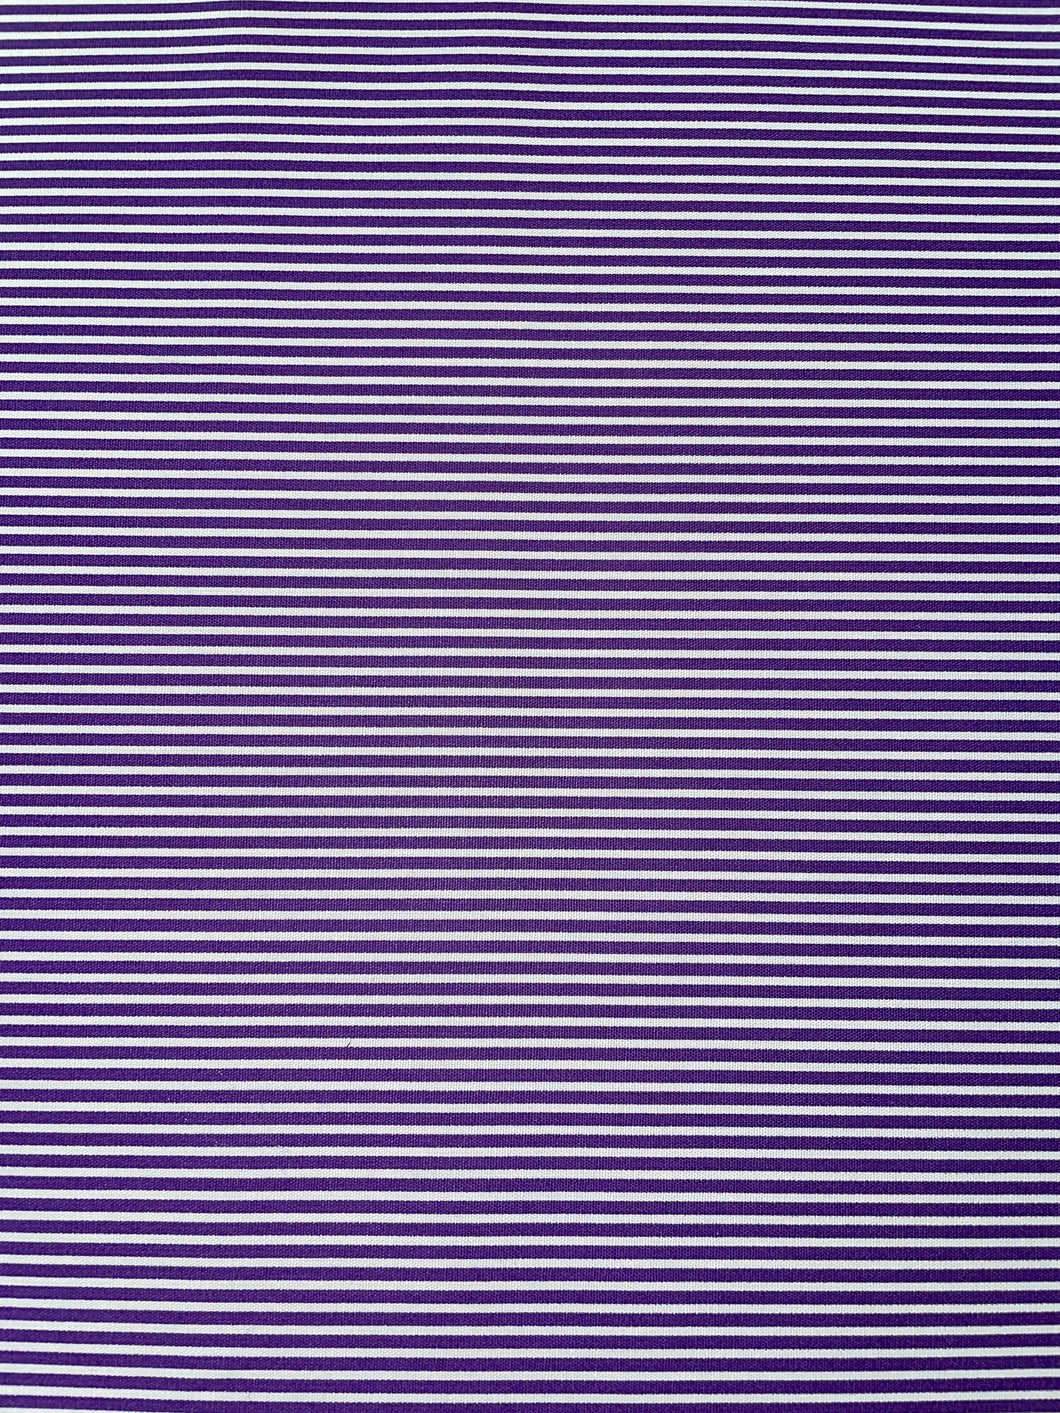 Purple and White Stripe Cotton Poplin